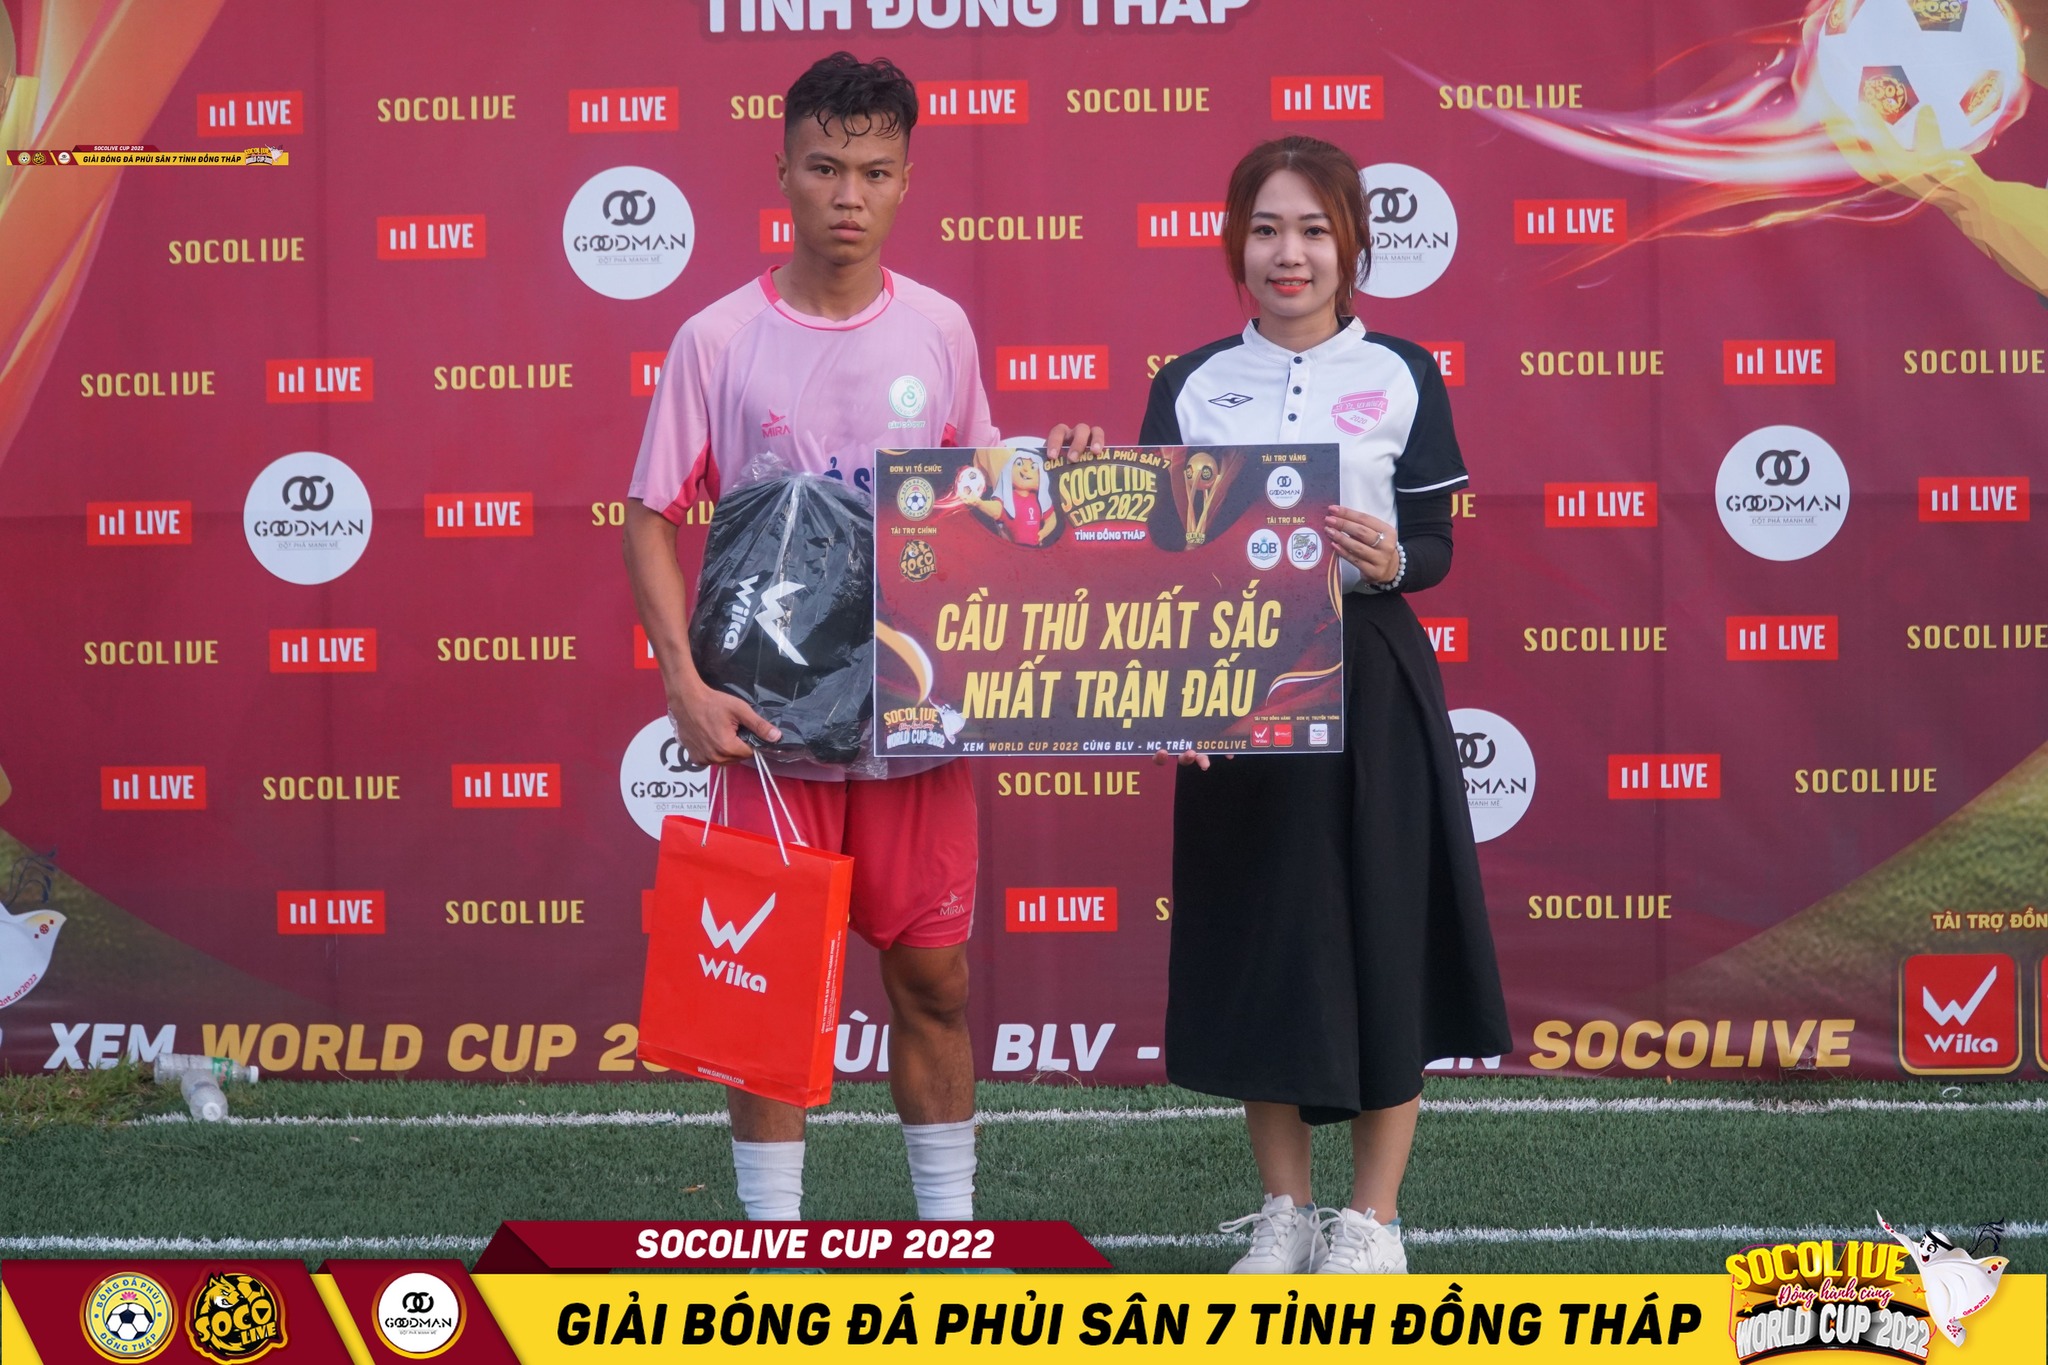 Trí Nguyên - Dr. Duy Sân Cỏ Sport xuất sắc nhất trận Vòng 3 Giải bóng đá Đồng Tháp Socolive Cup 2022